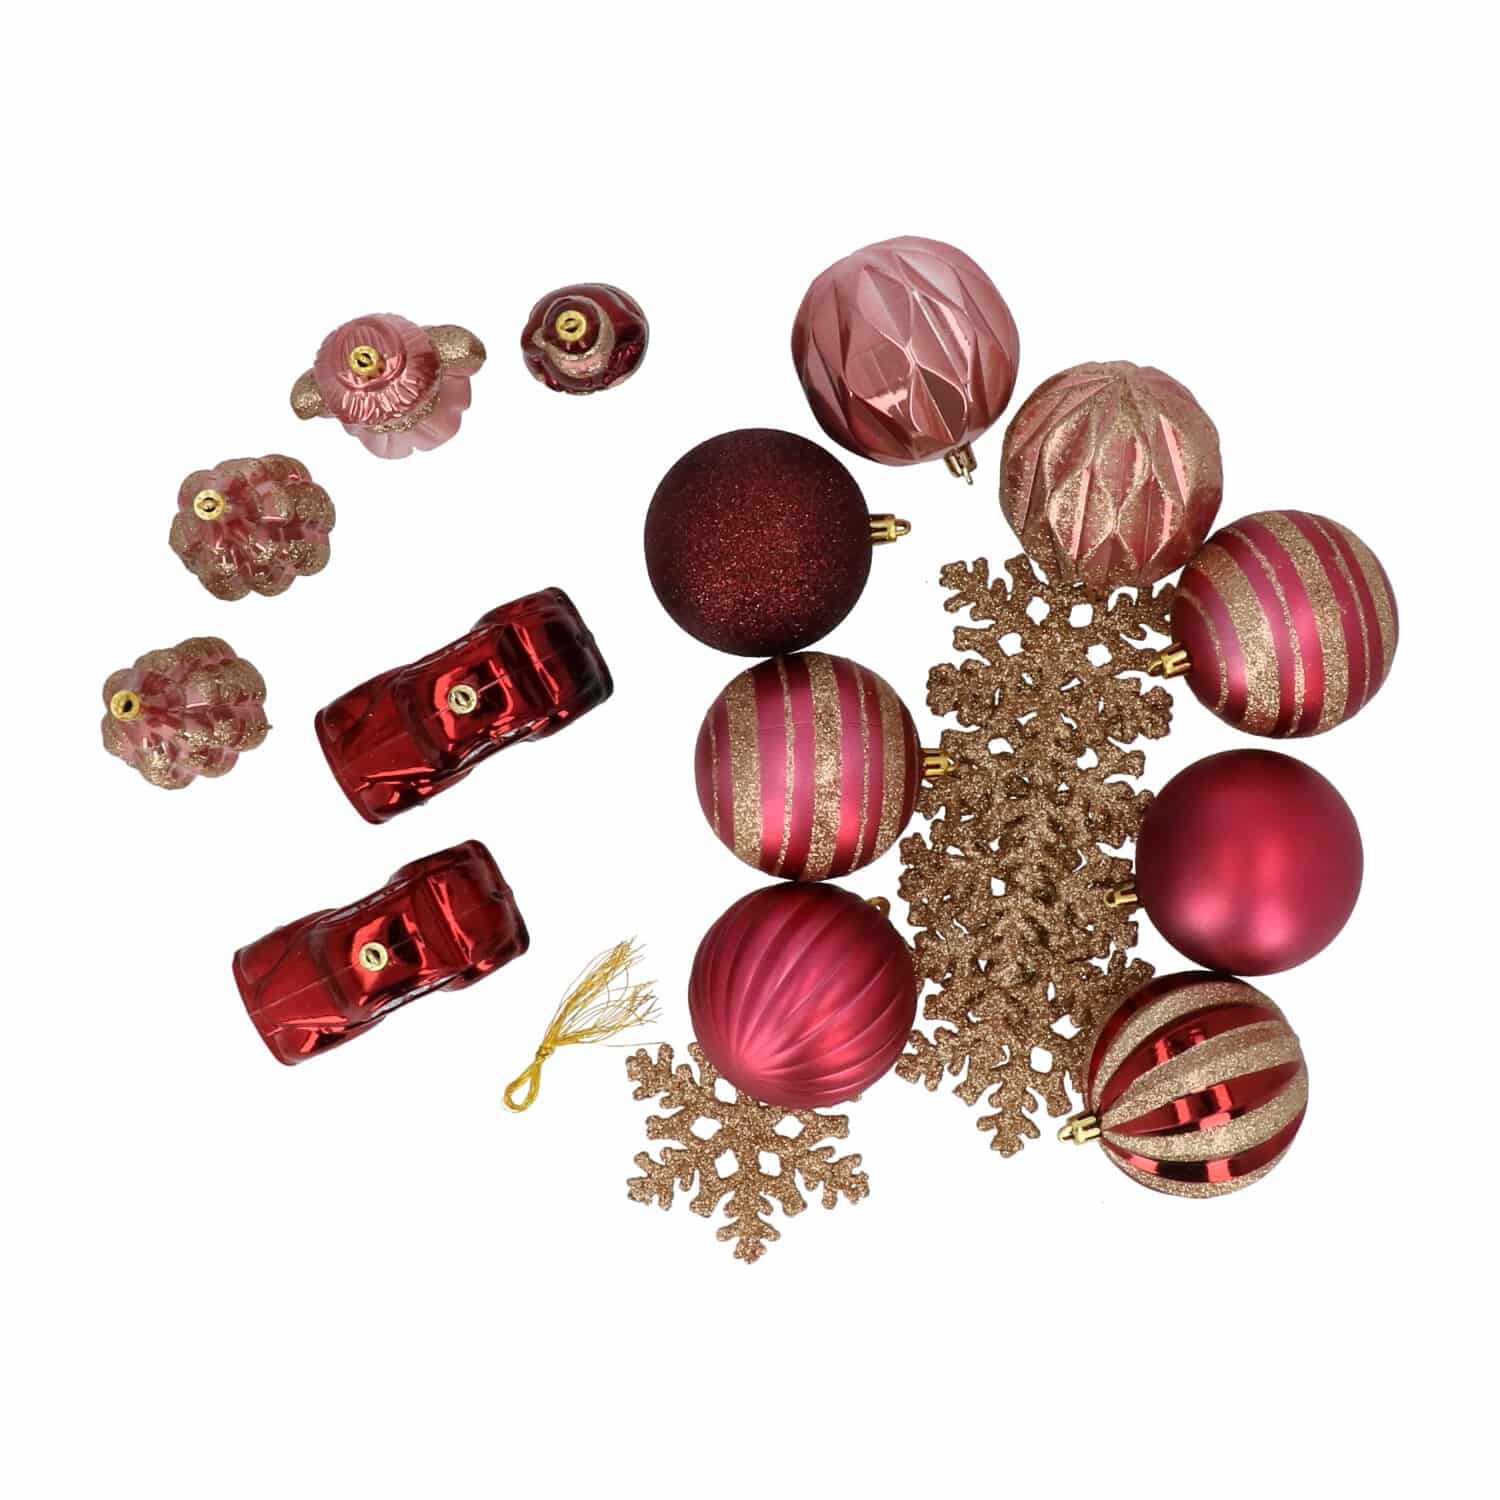 4goodz 20-delige Decoratieve Kerstballenset Roze - voor binnen/buiten